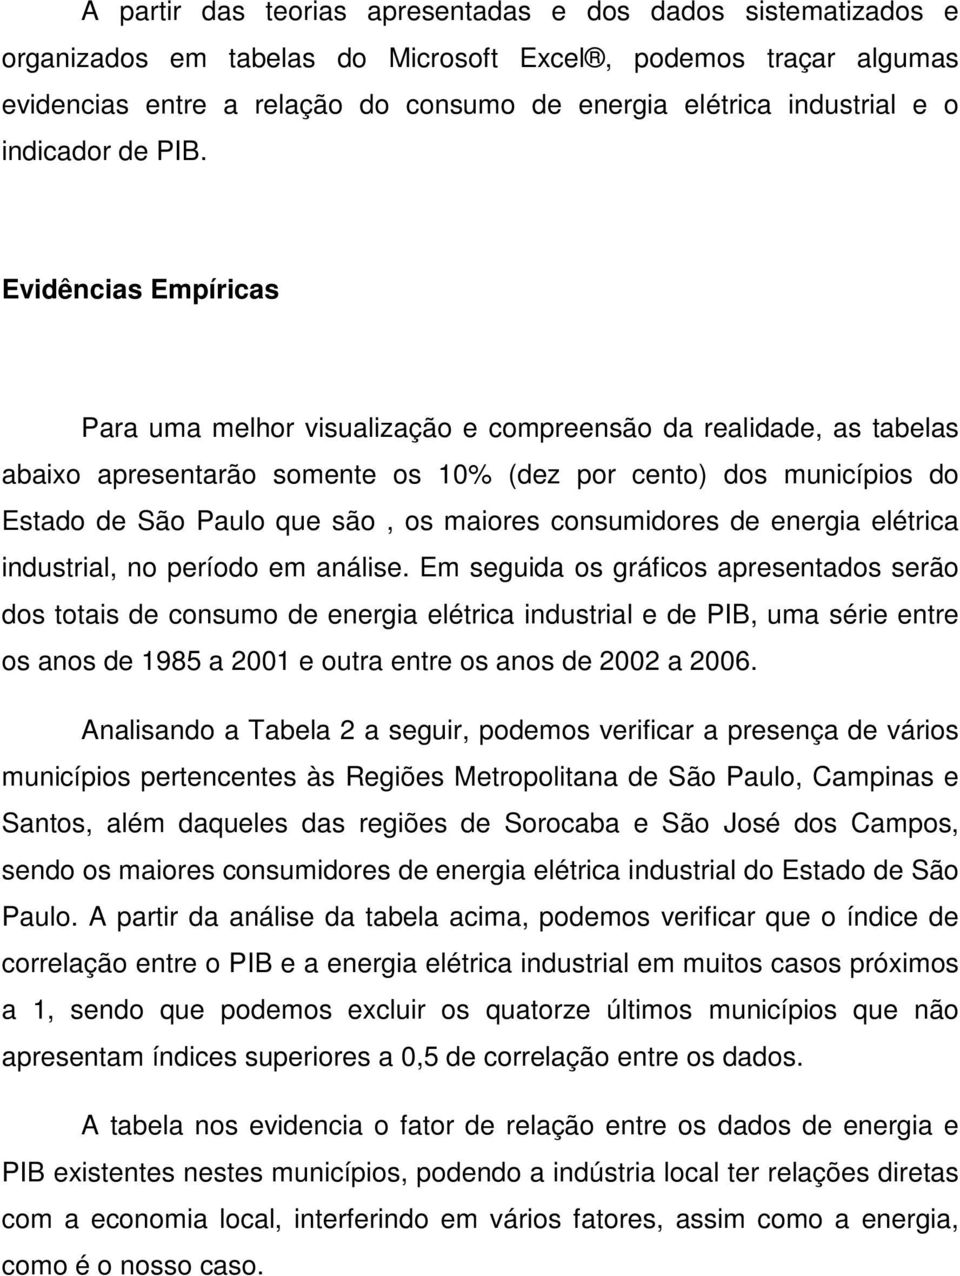 Evidências Empíricas Para uma melhor visualização e compreensão da realidade, as tabelas abaixo apresentarão somente os 10% (dez por cento) dos municípios do Estado de São Paulo que são, os maiores